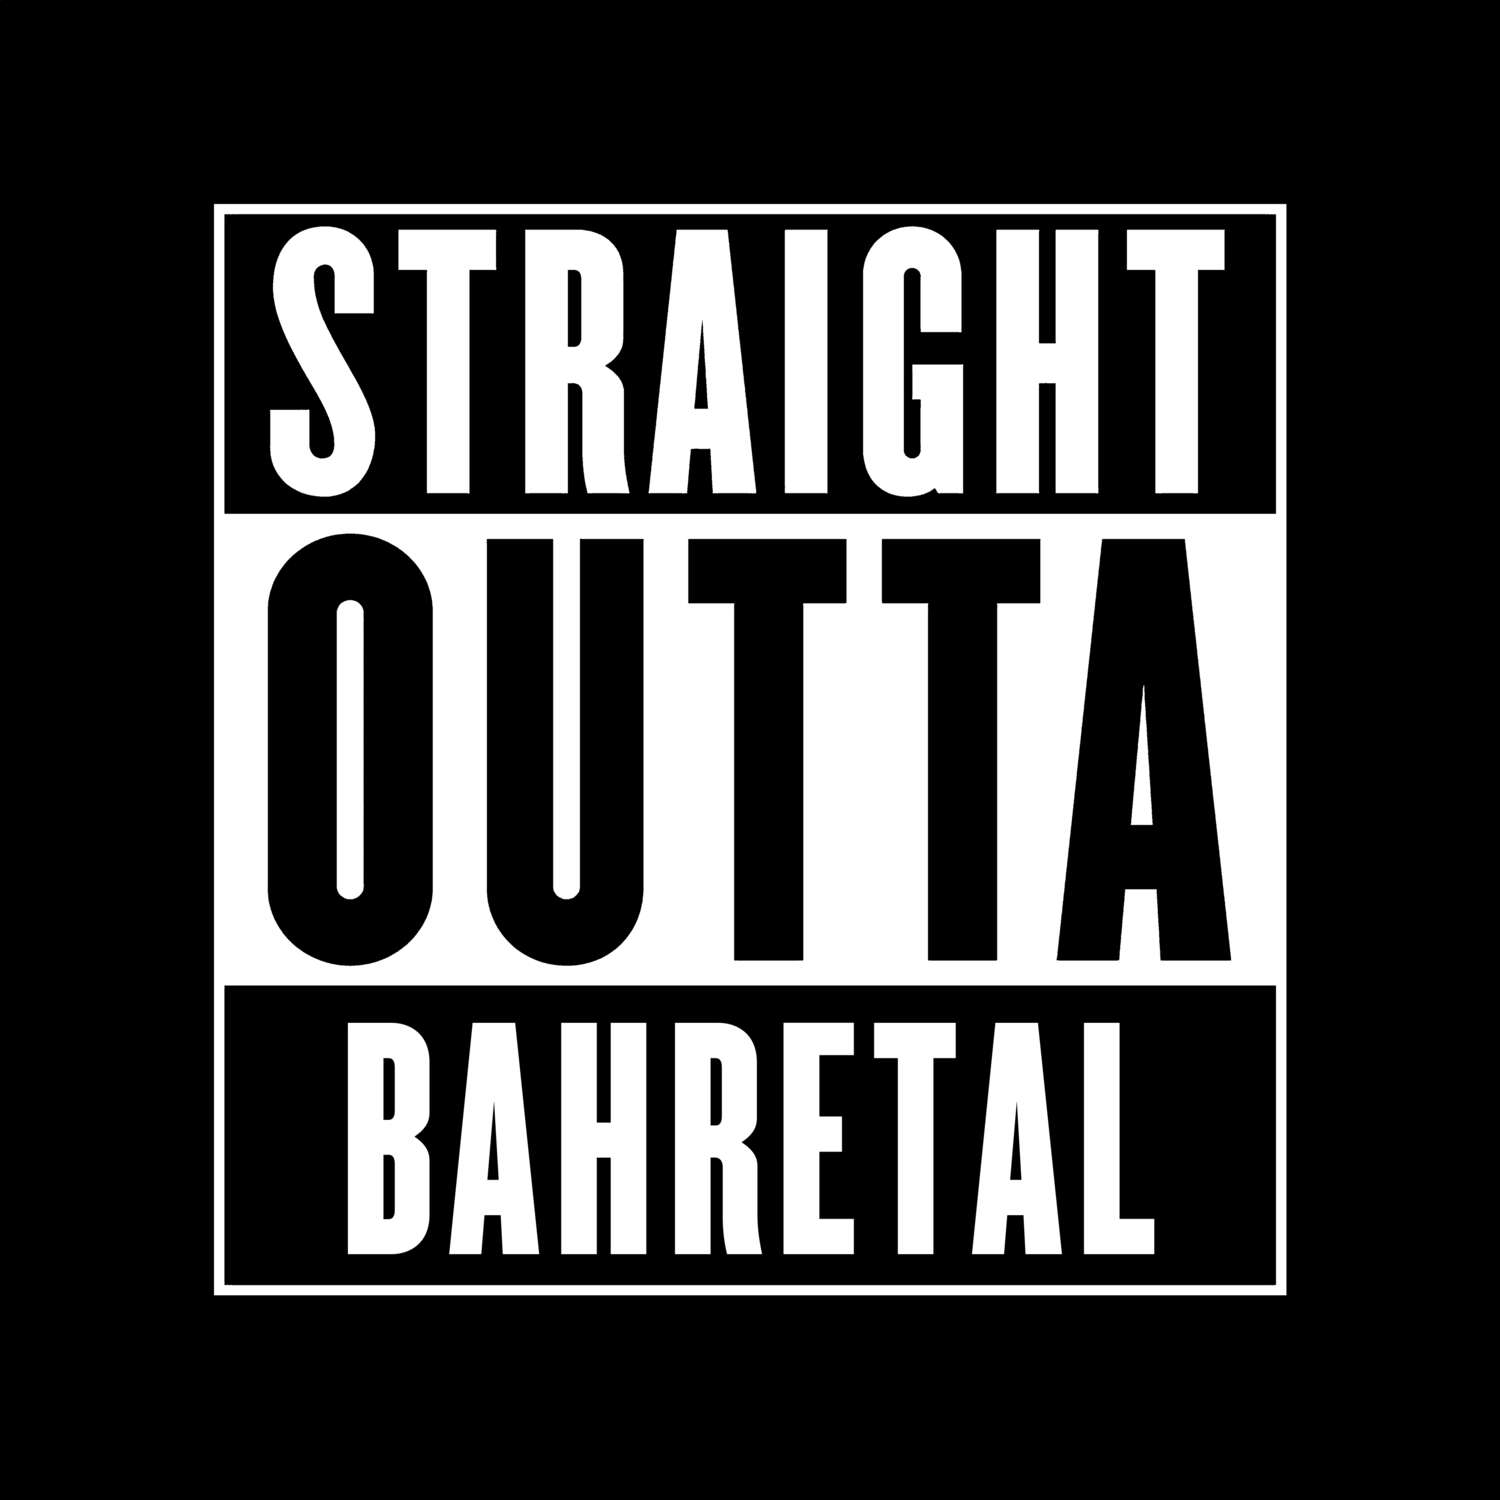 Bahretal T-Shirt »Straight Outta«